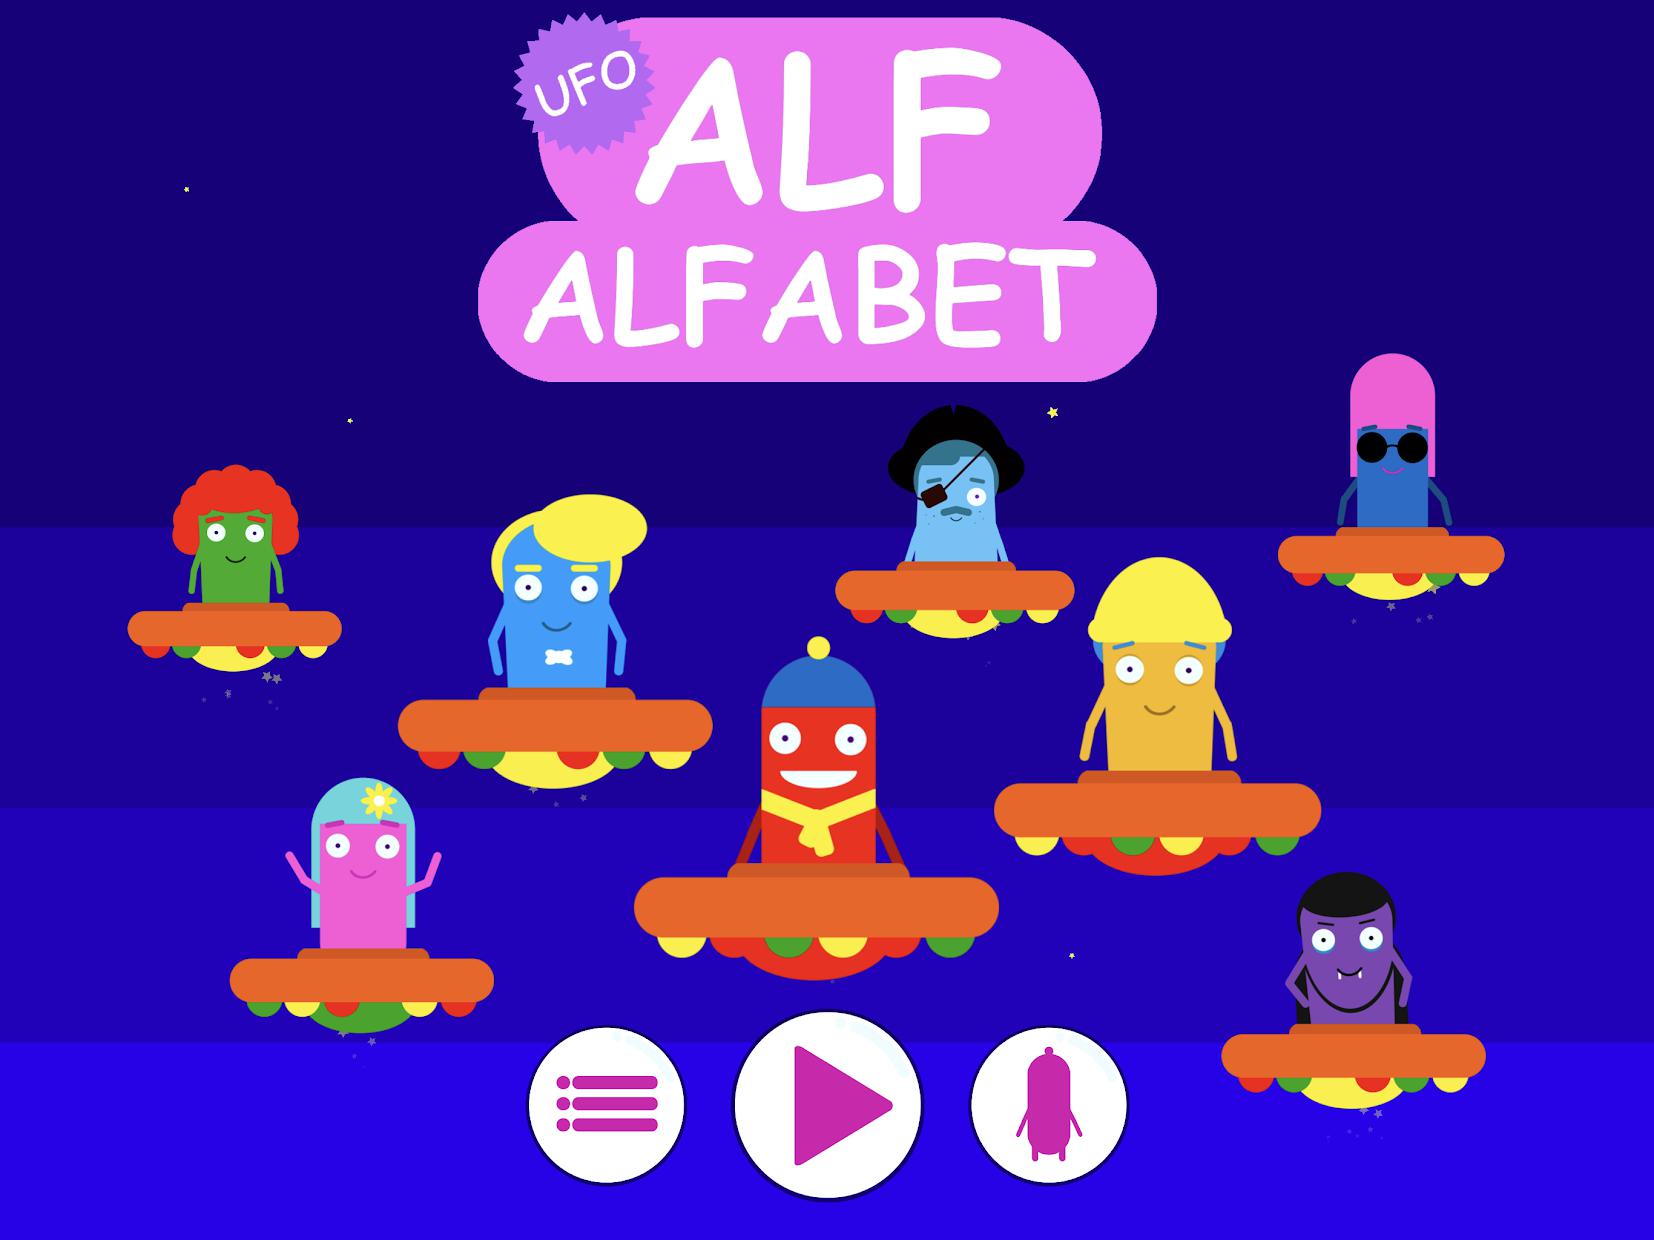 Alf Alfabet - UFO